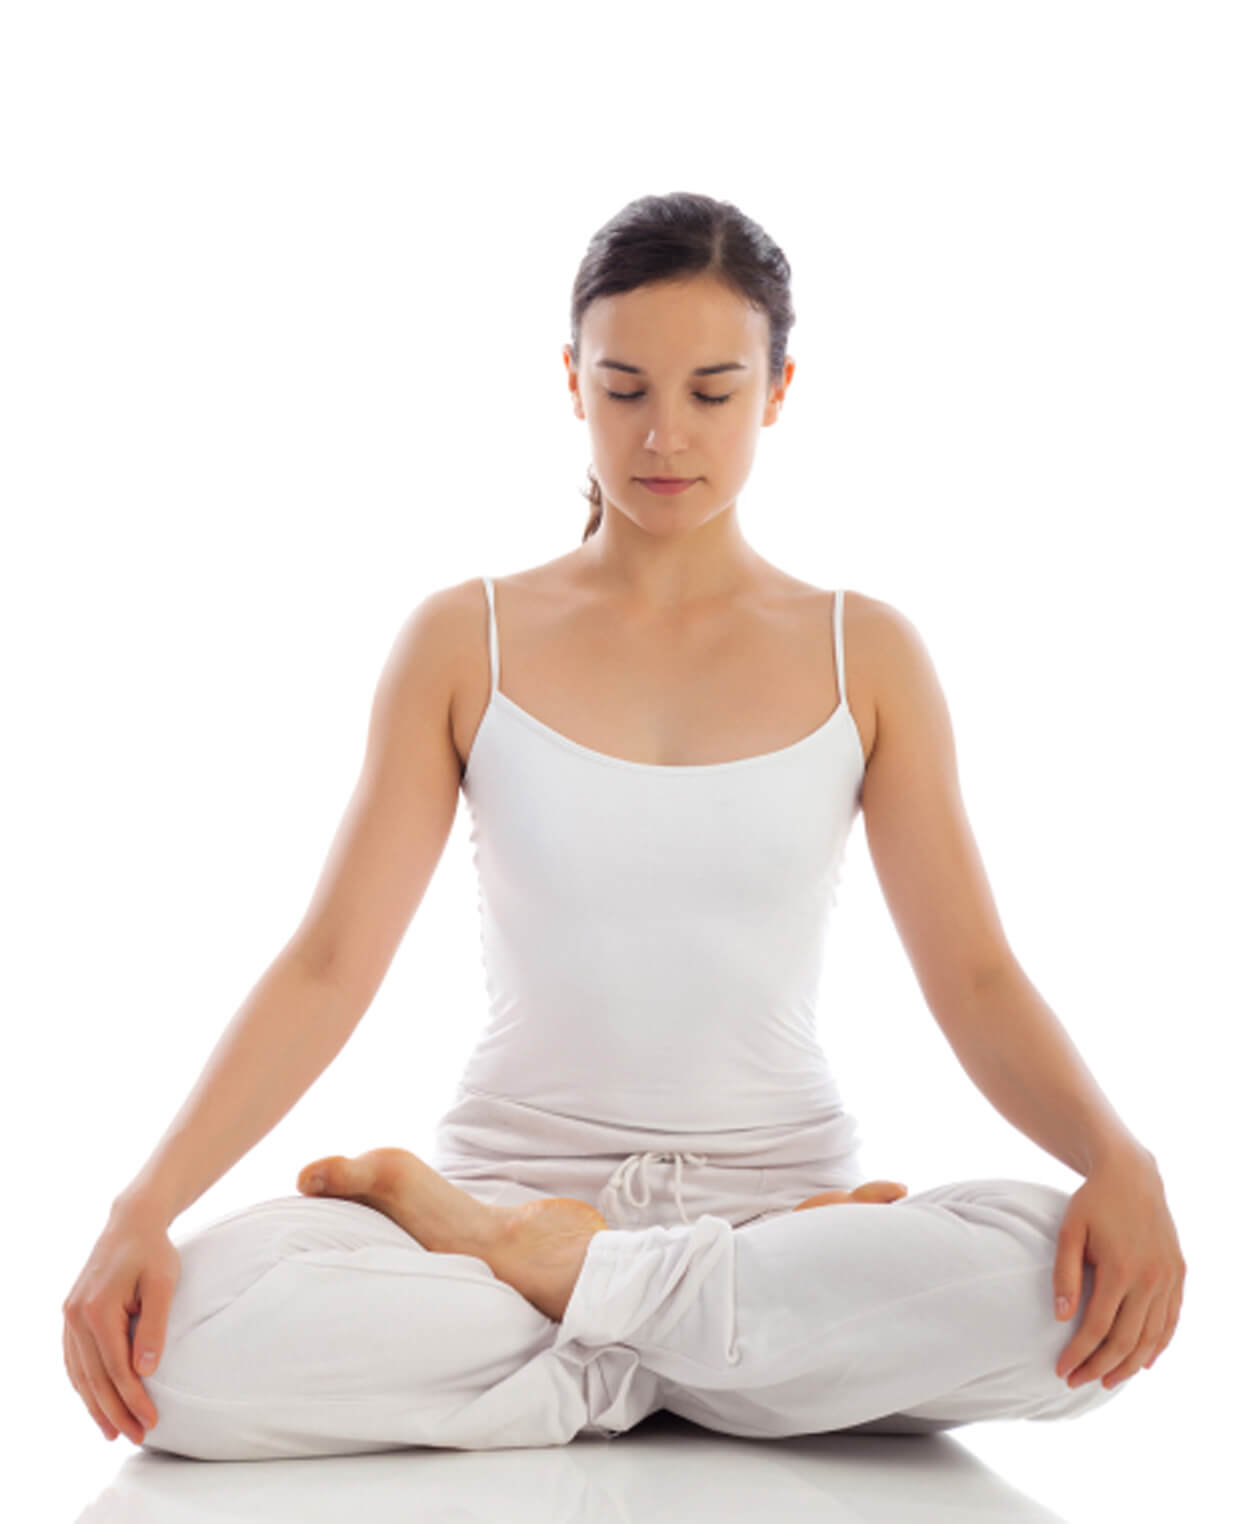 Thiền định là bước cơ bản nhất khi bắt đầu tập yoga tại nhà